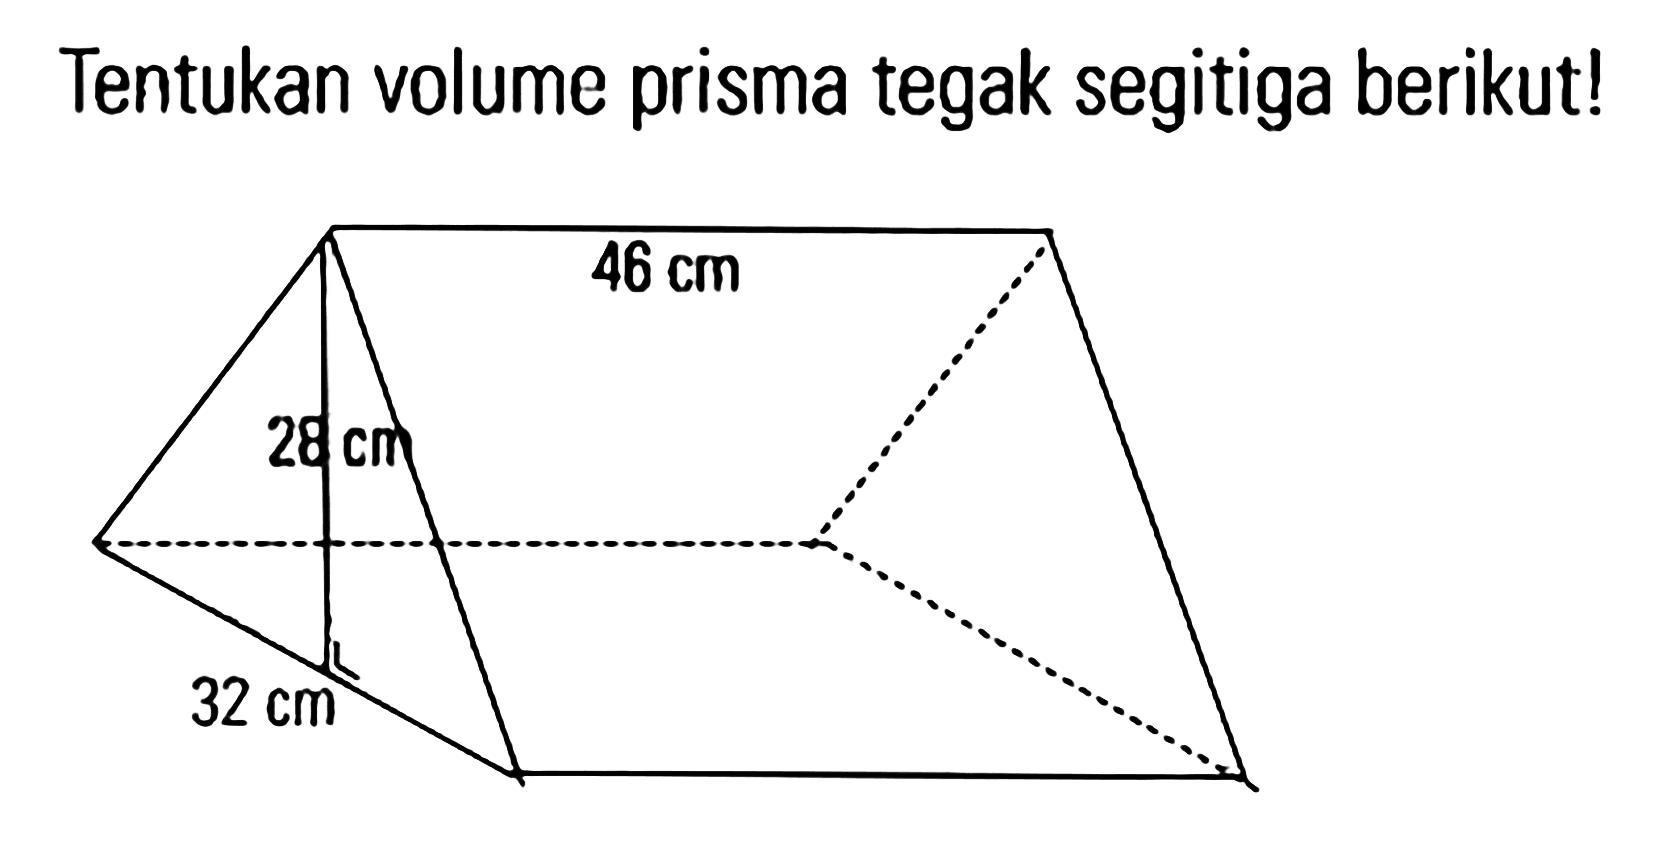 Tentukan volume prisma tegak segitiga berikut!
 46 cm
 26 cm
 32 cm